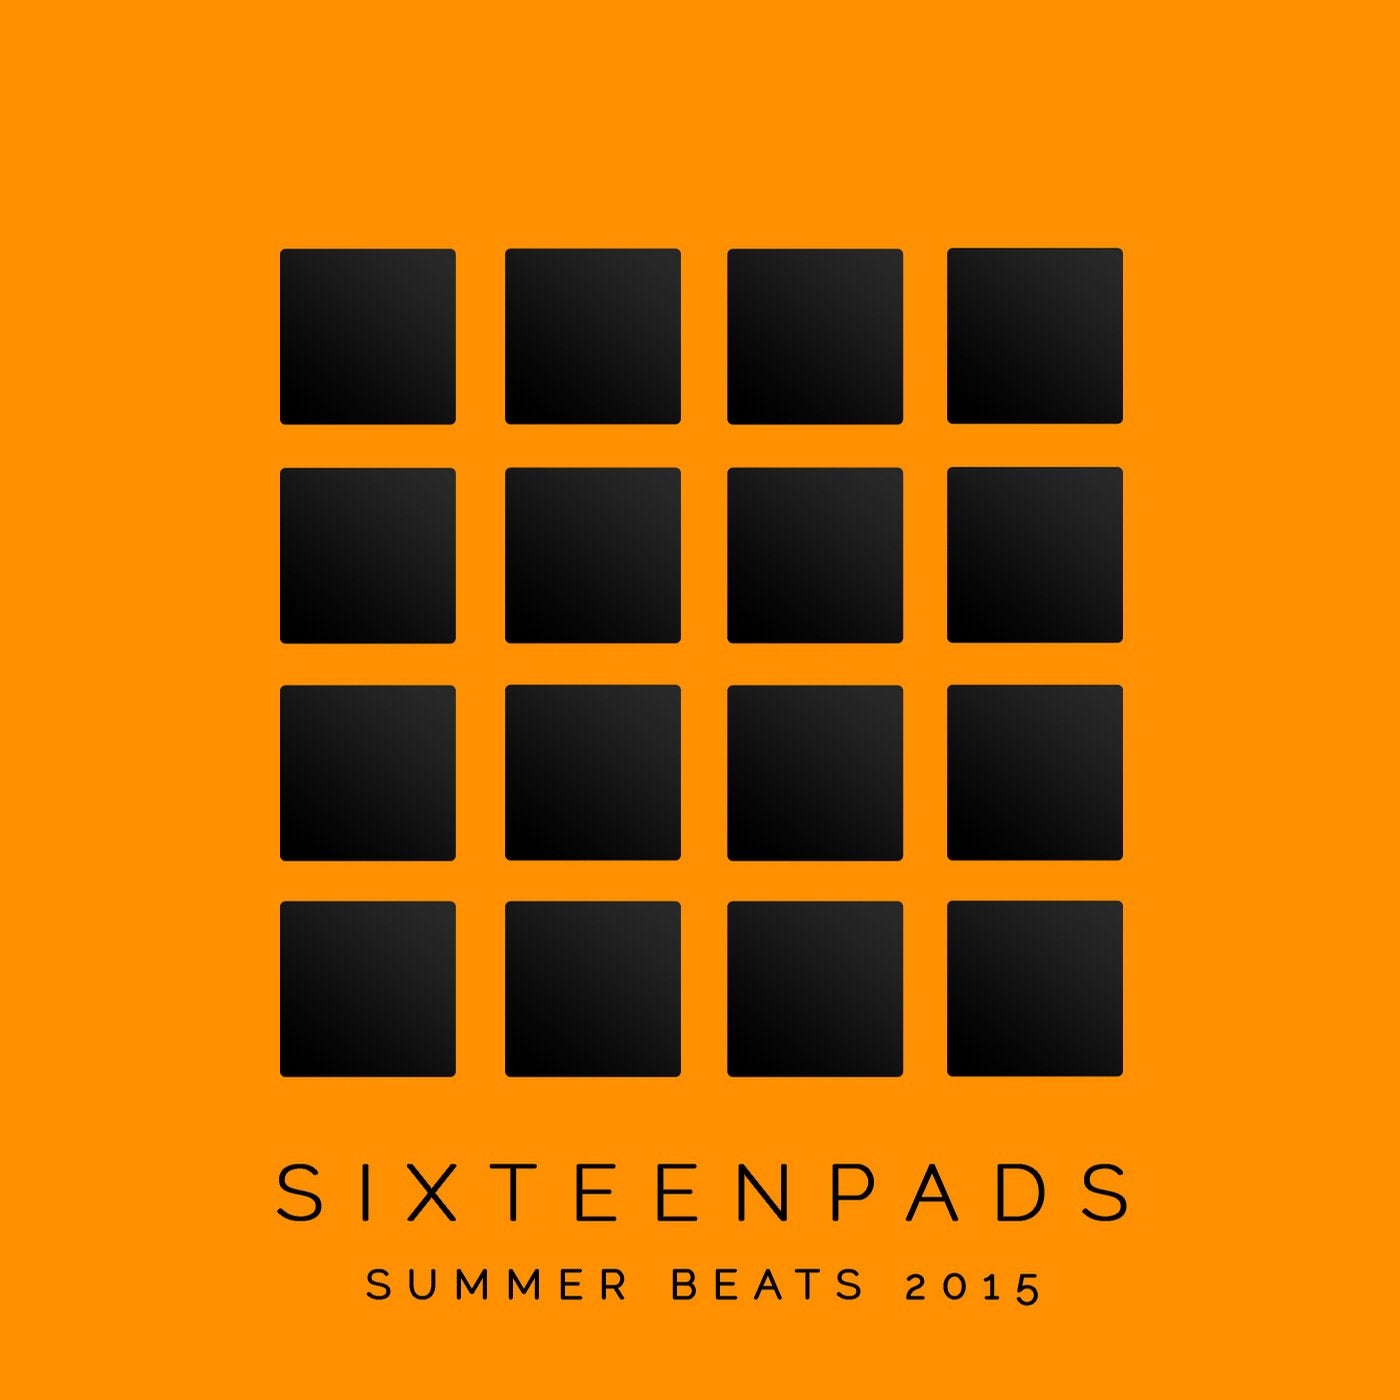 Summer Beats 2015